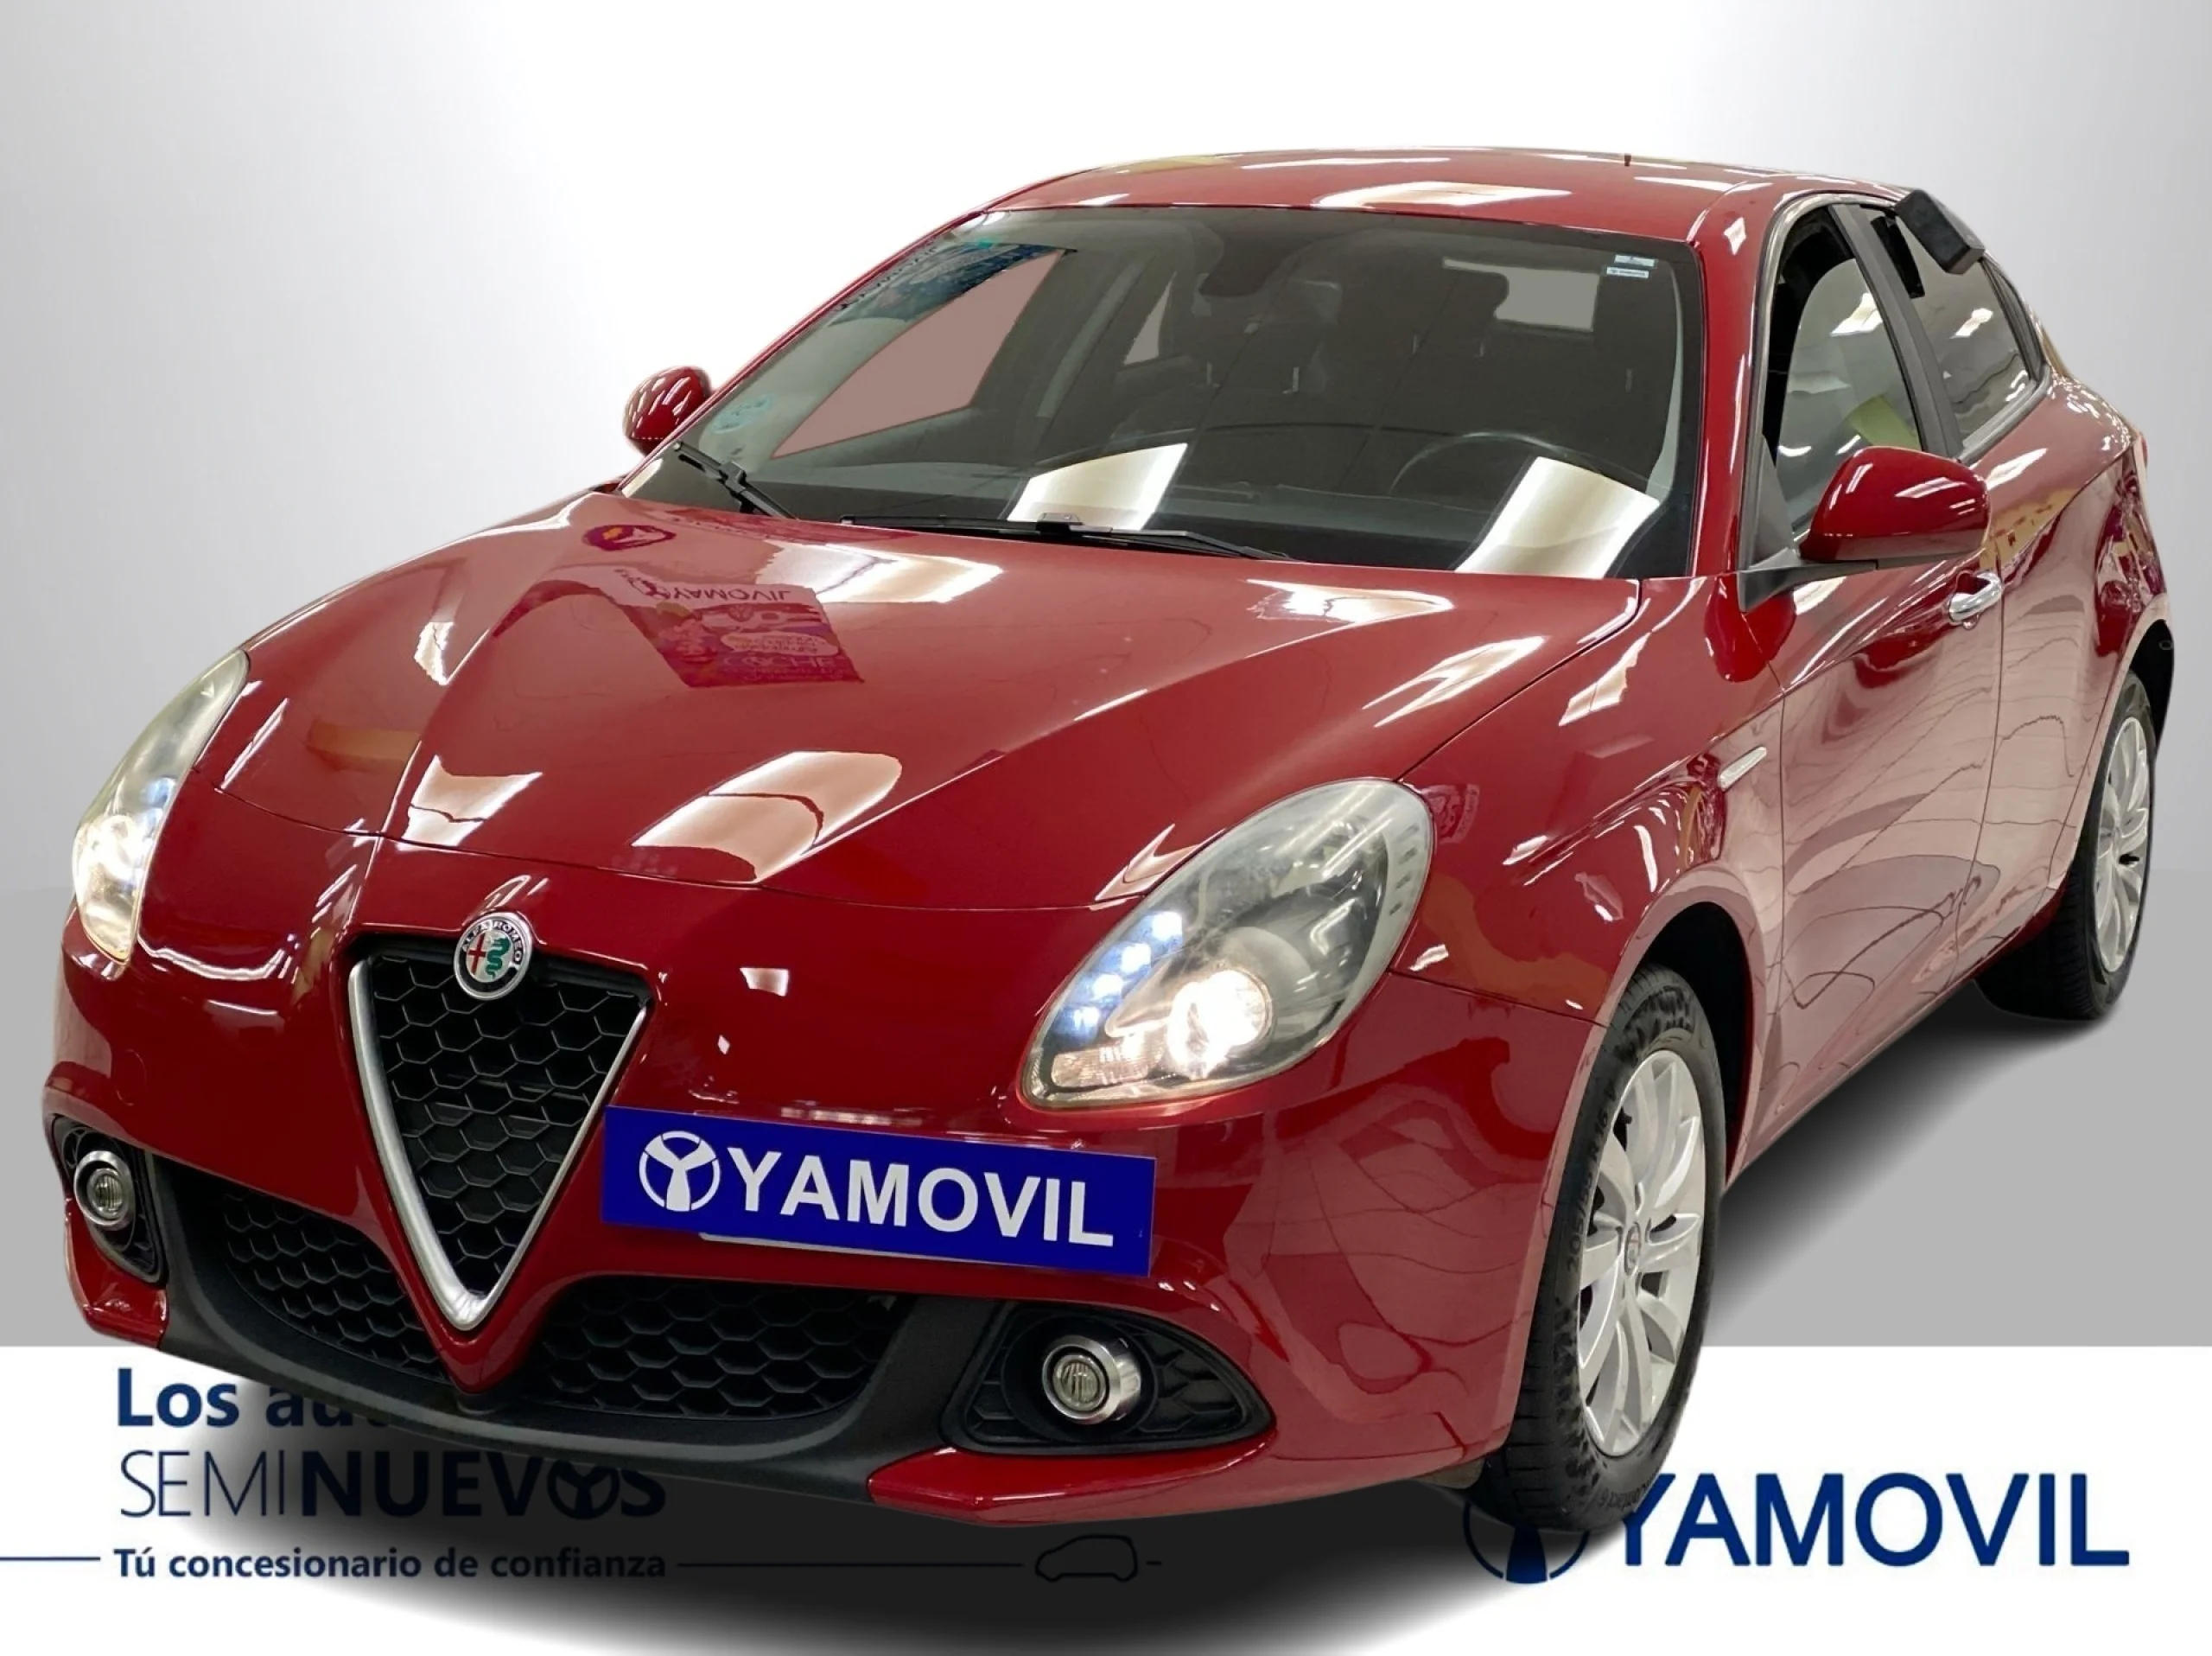 Alfa Romeo Giulietta 1.6 JTD Giulietta 88 kW (120 CV) - Foto 1